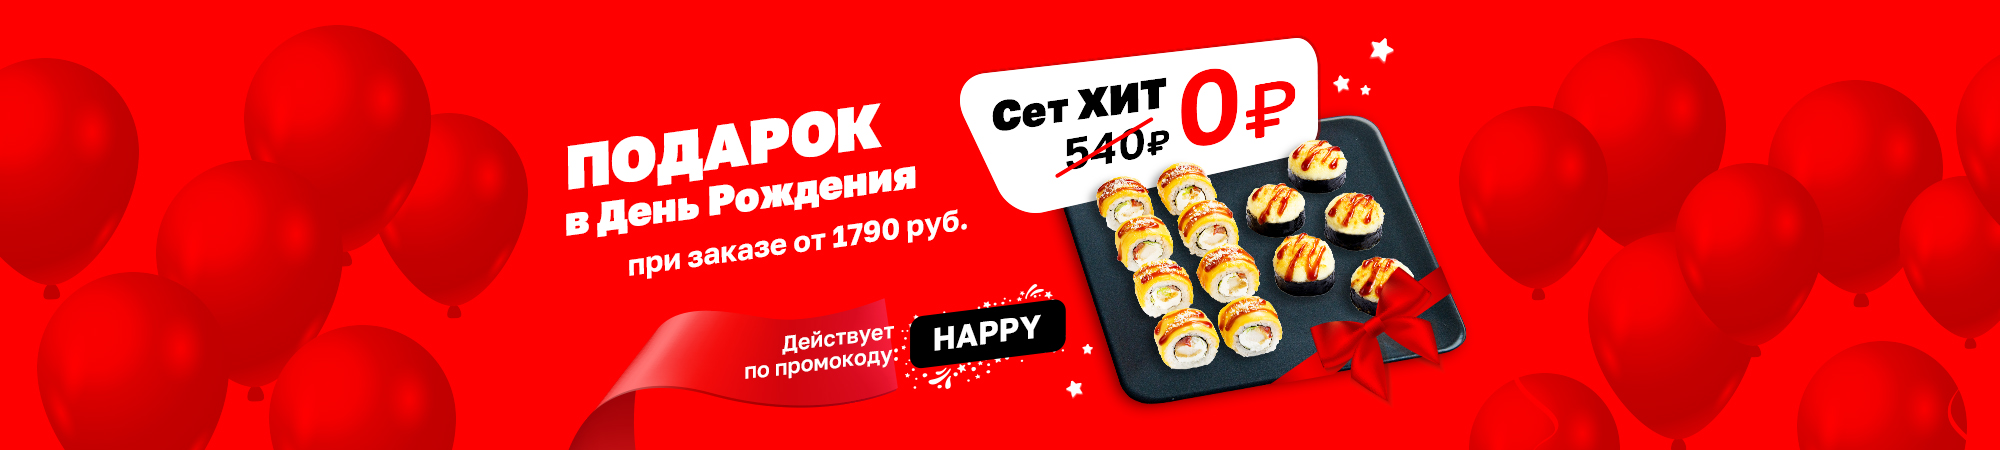 Подарок в День Рождения при заказе от 1790 руб. по промокоду HAPPY